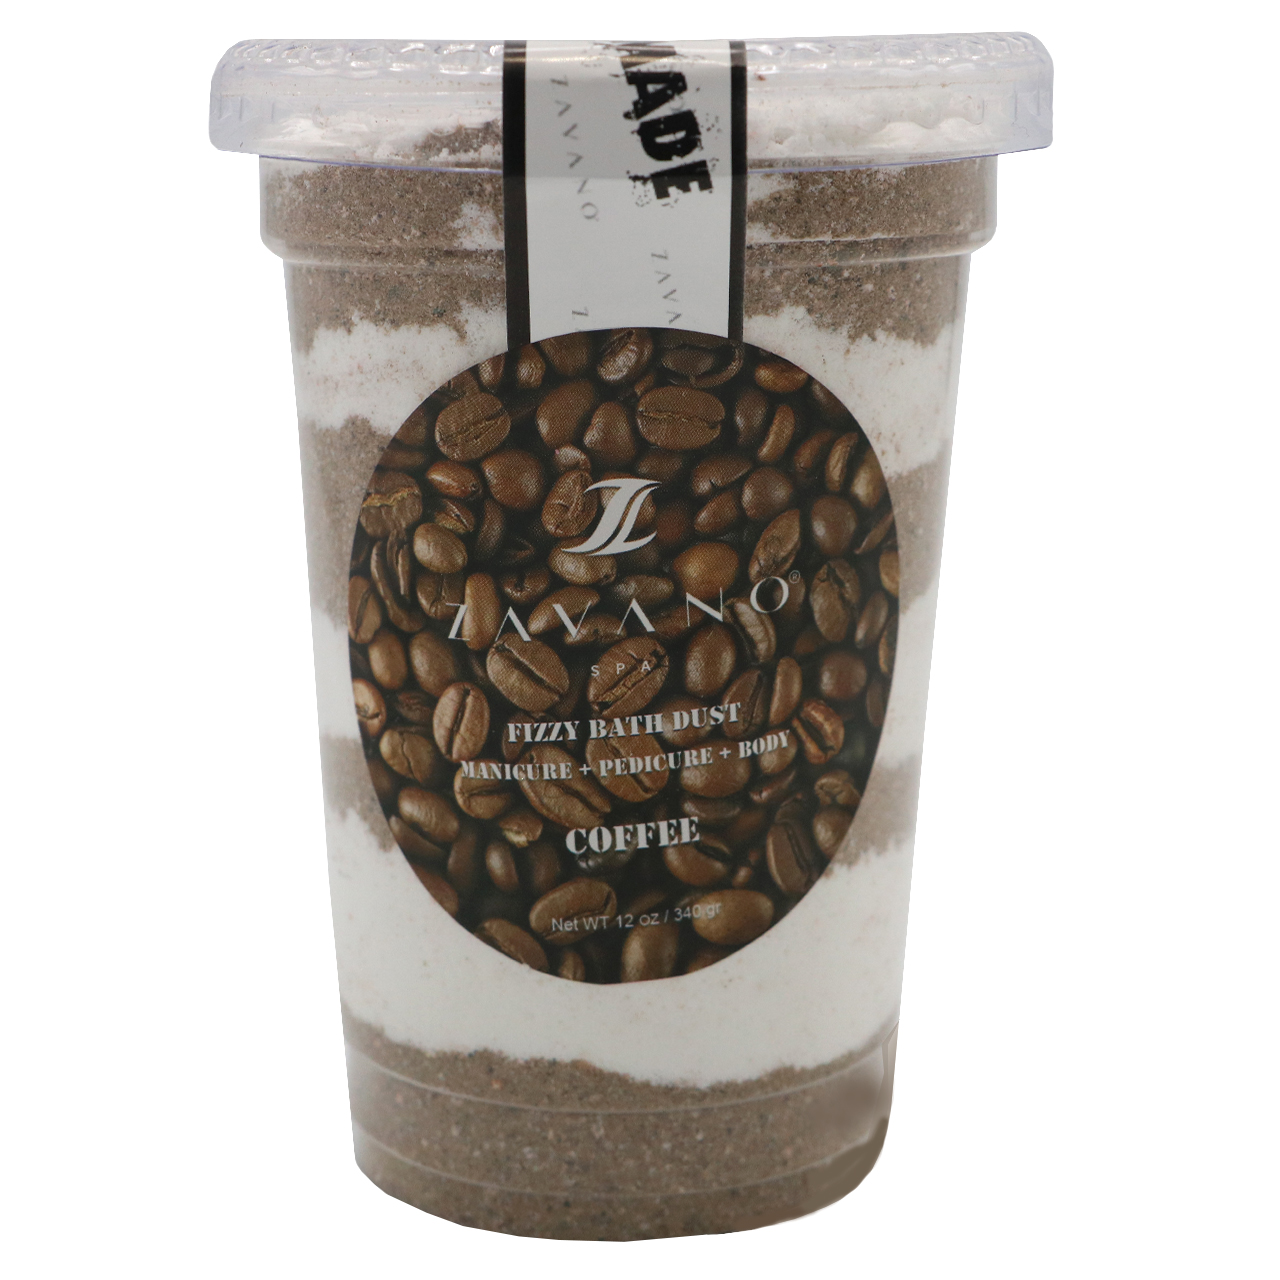 پودر کف دار مانیکور پدیکور زاوانو مدل Coffee